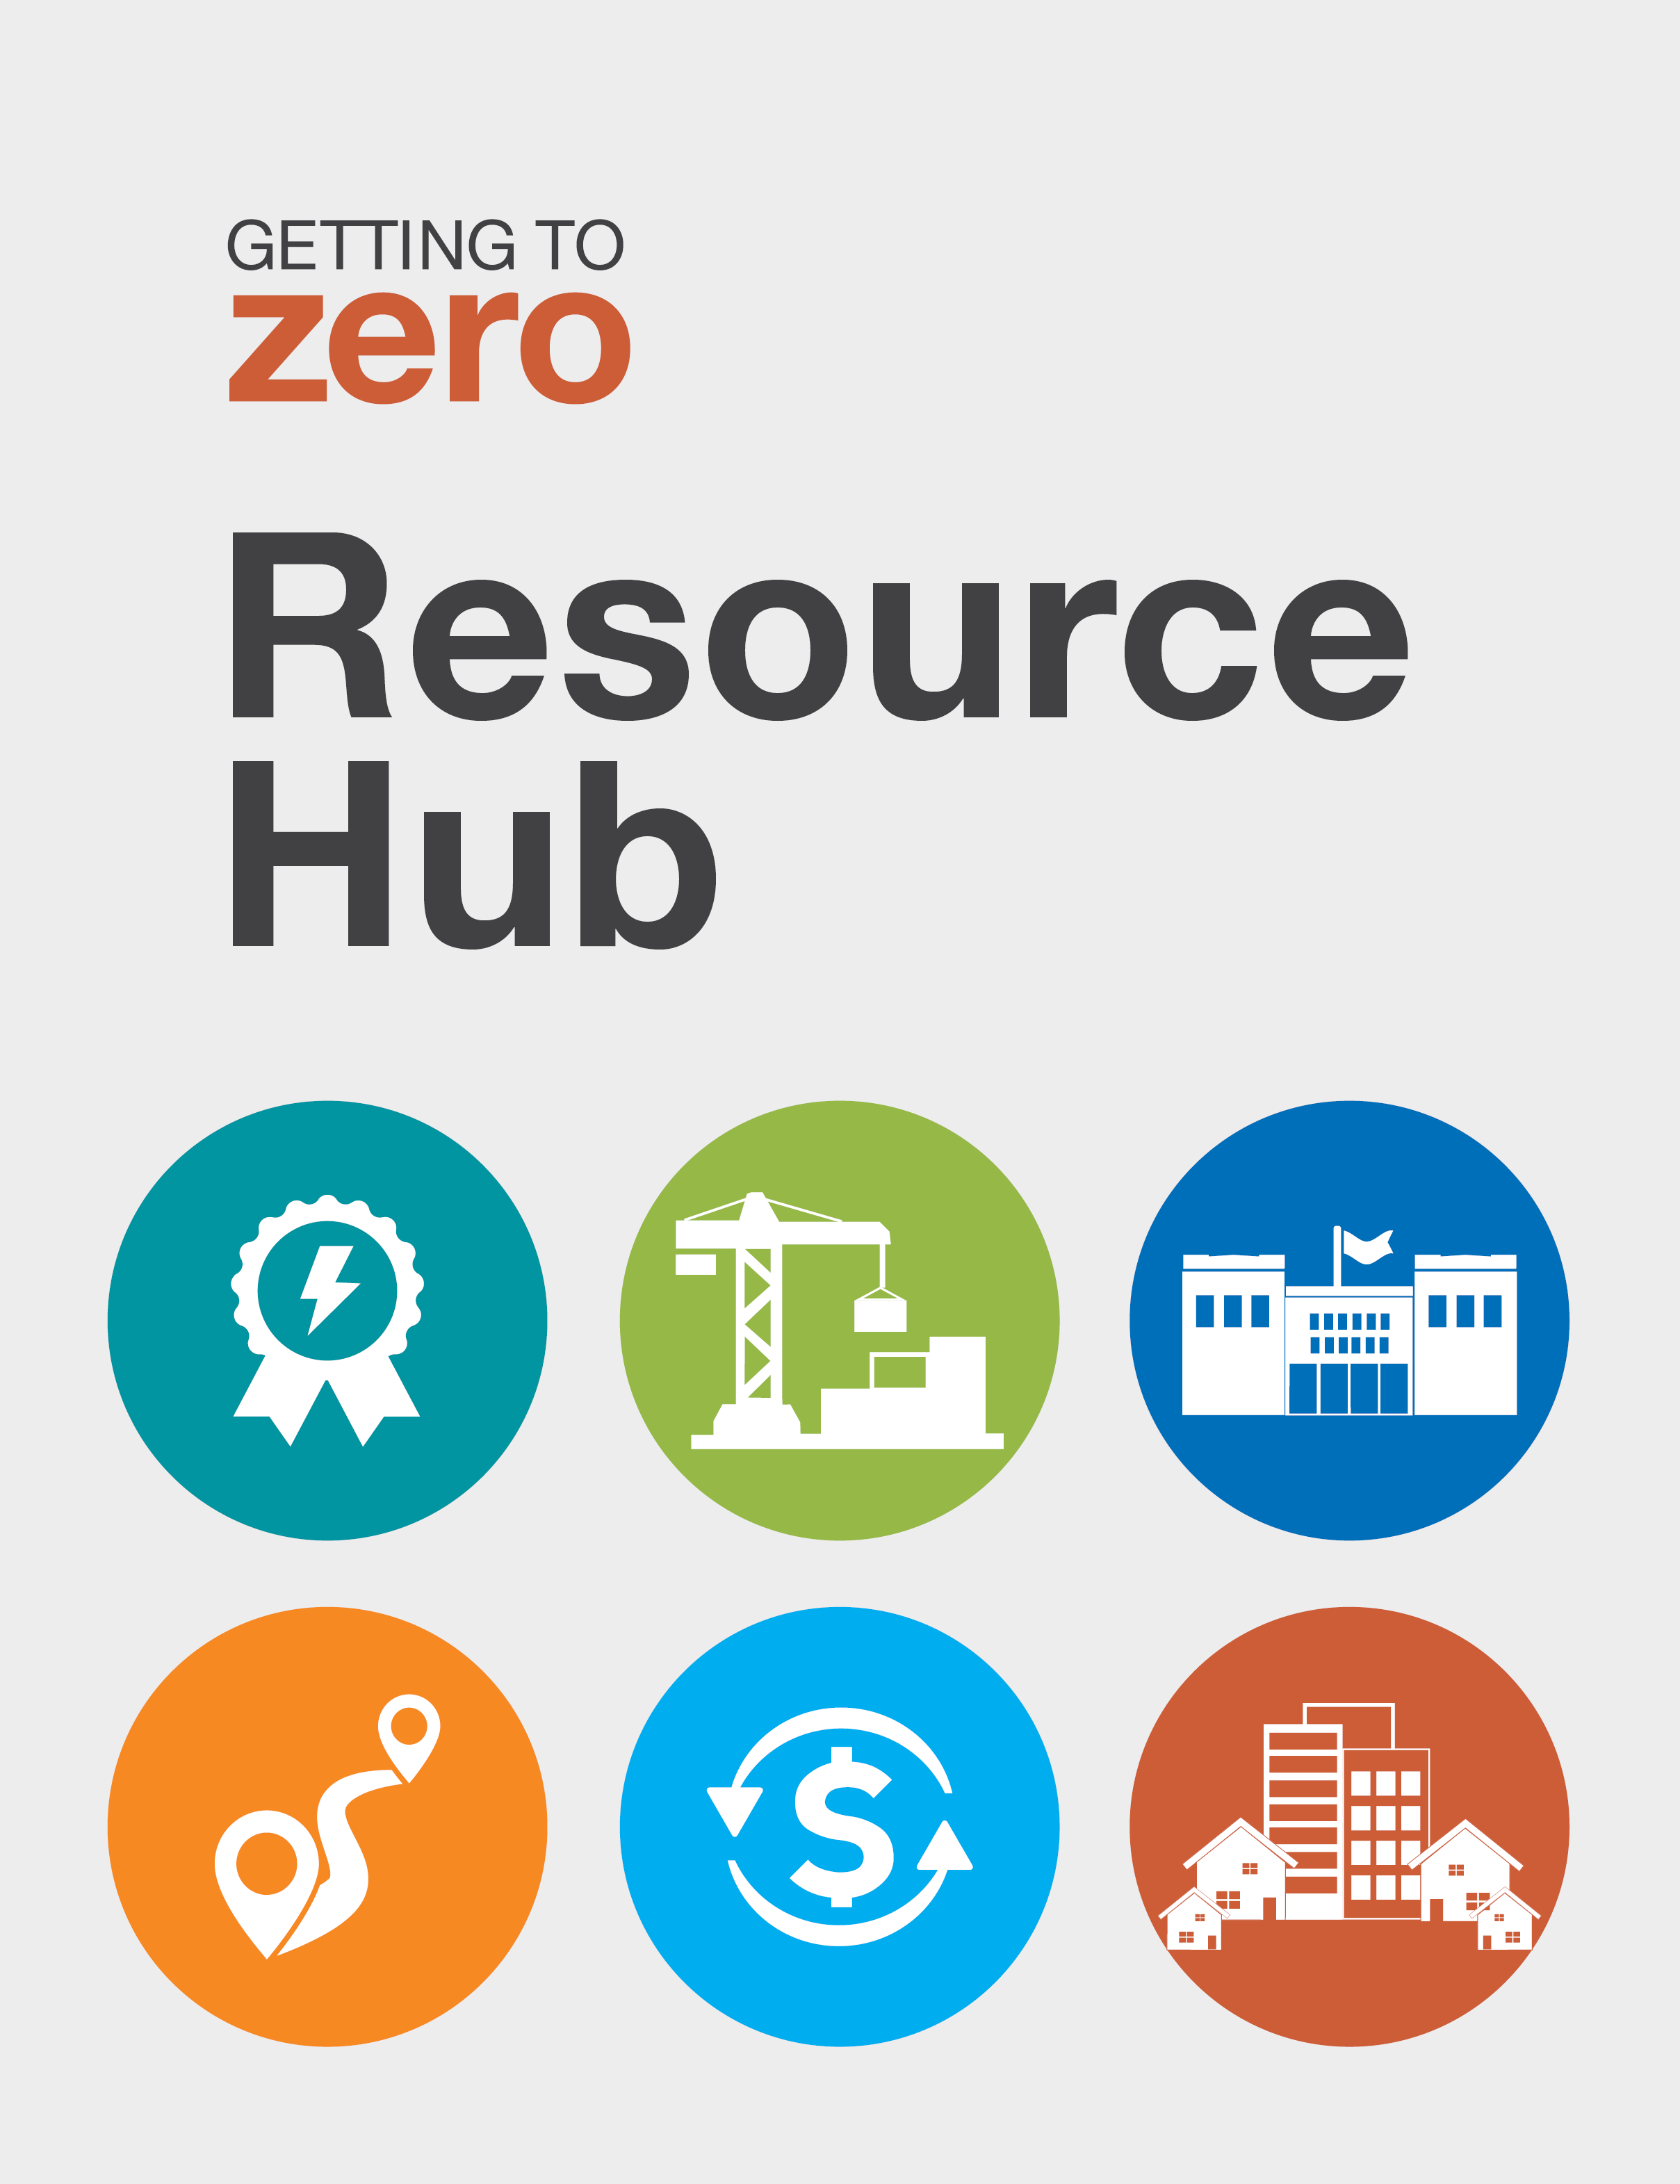 Getting to Zero Resource Hub